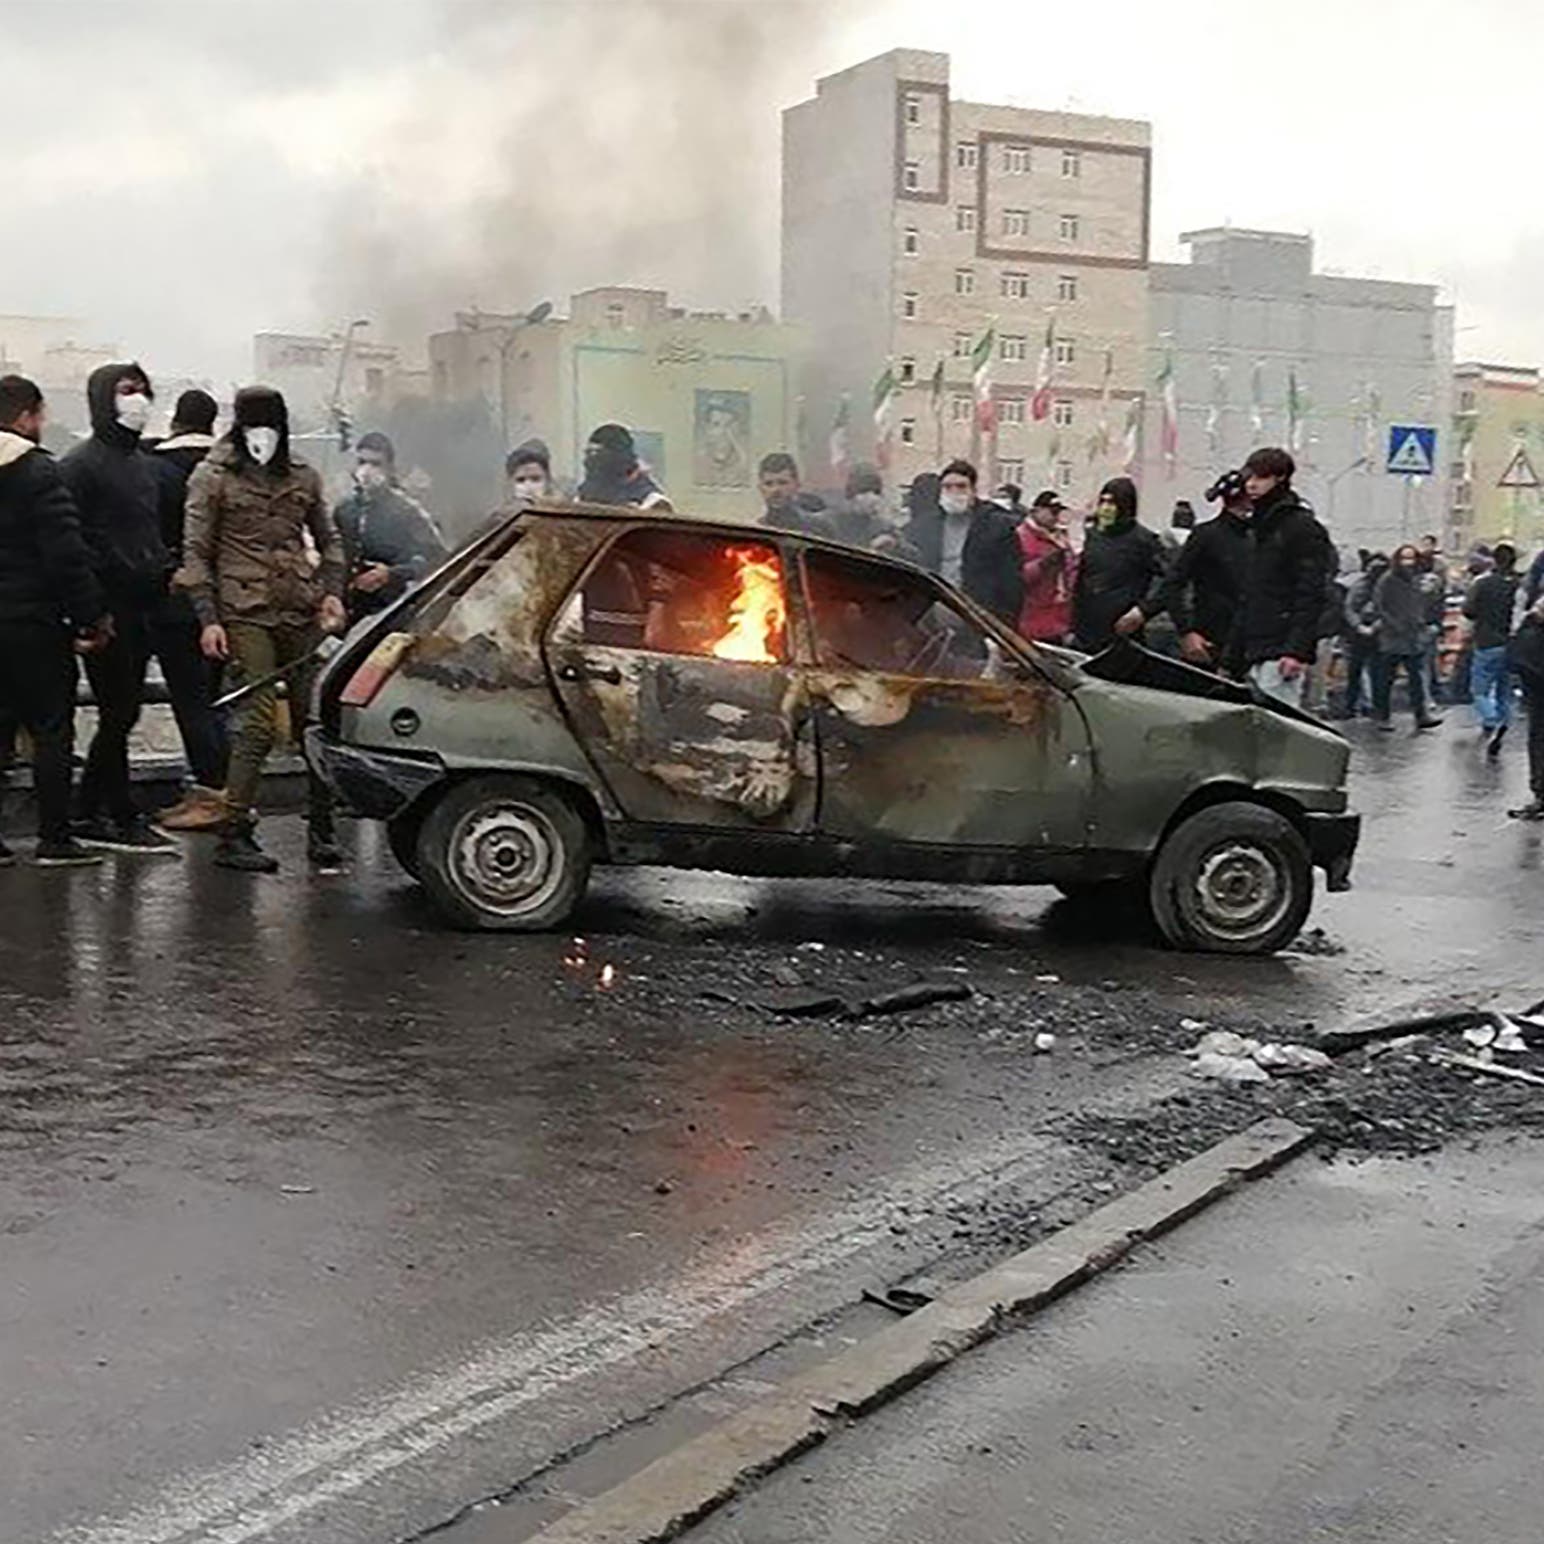 حكومة إيران تمتنع عن إعلان عدد قتلی احتجاجات نوفمبر